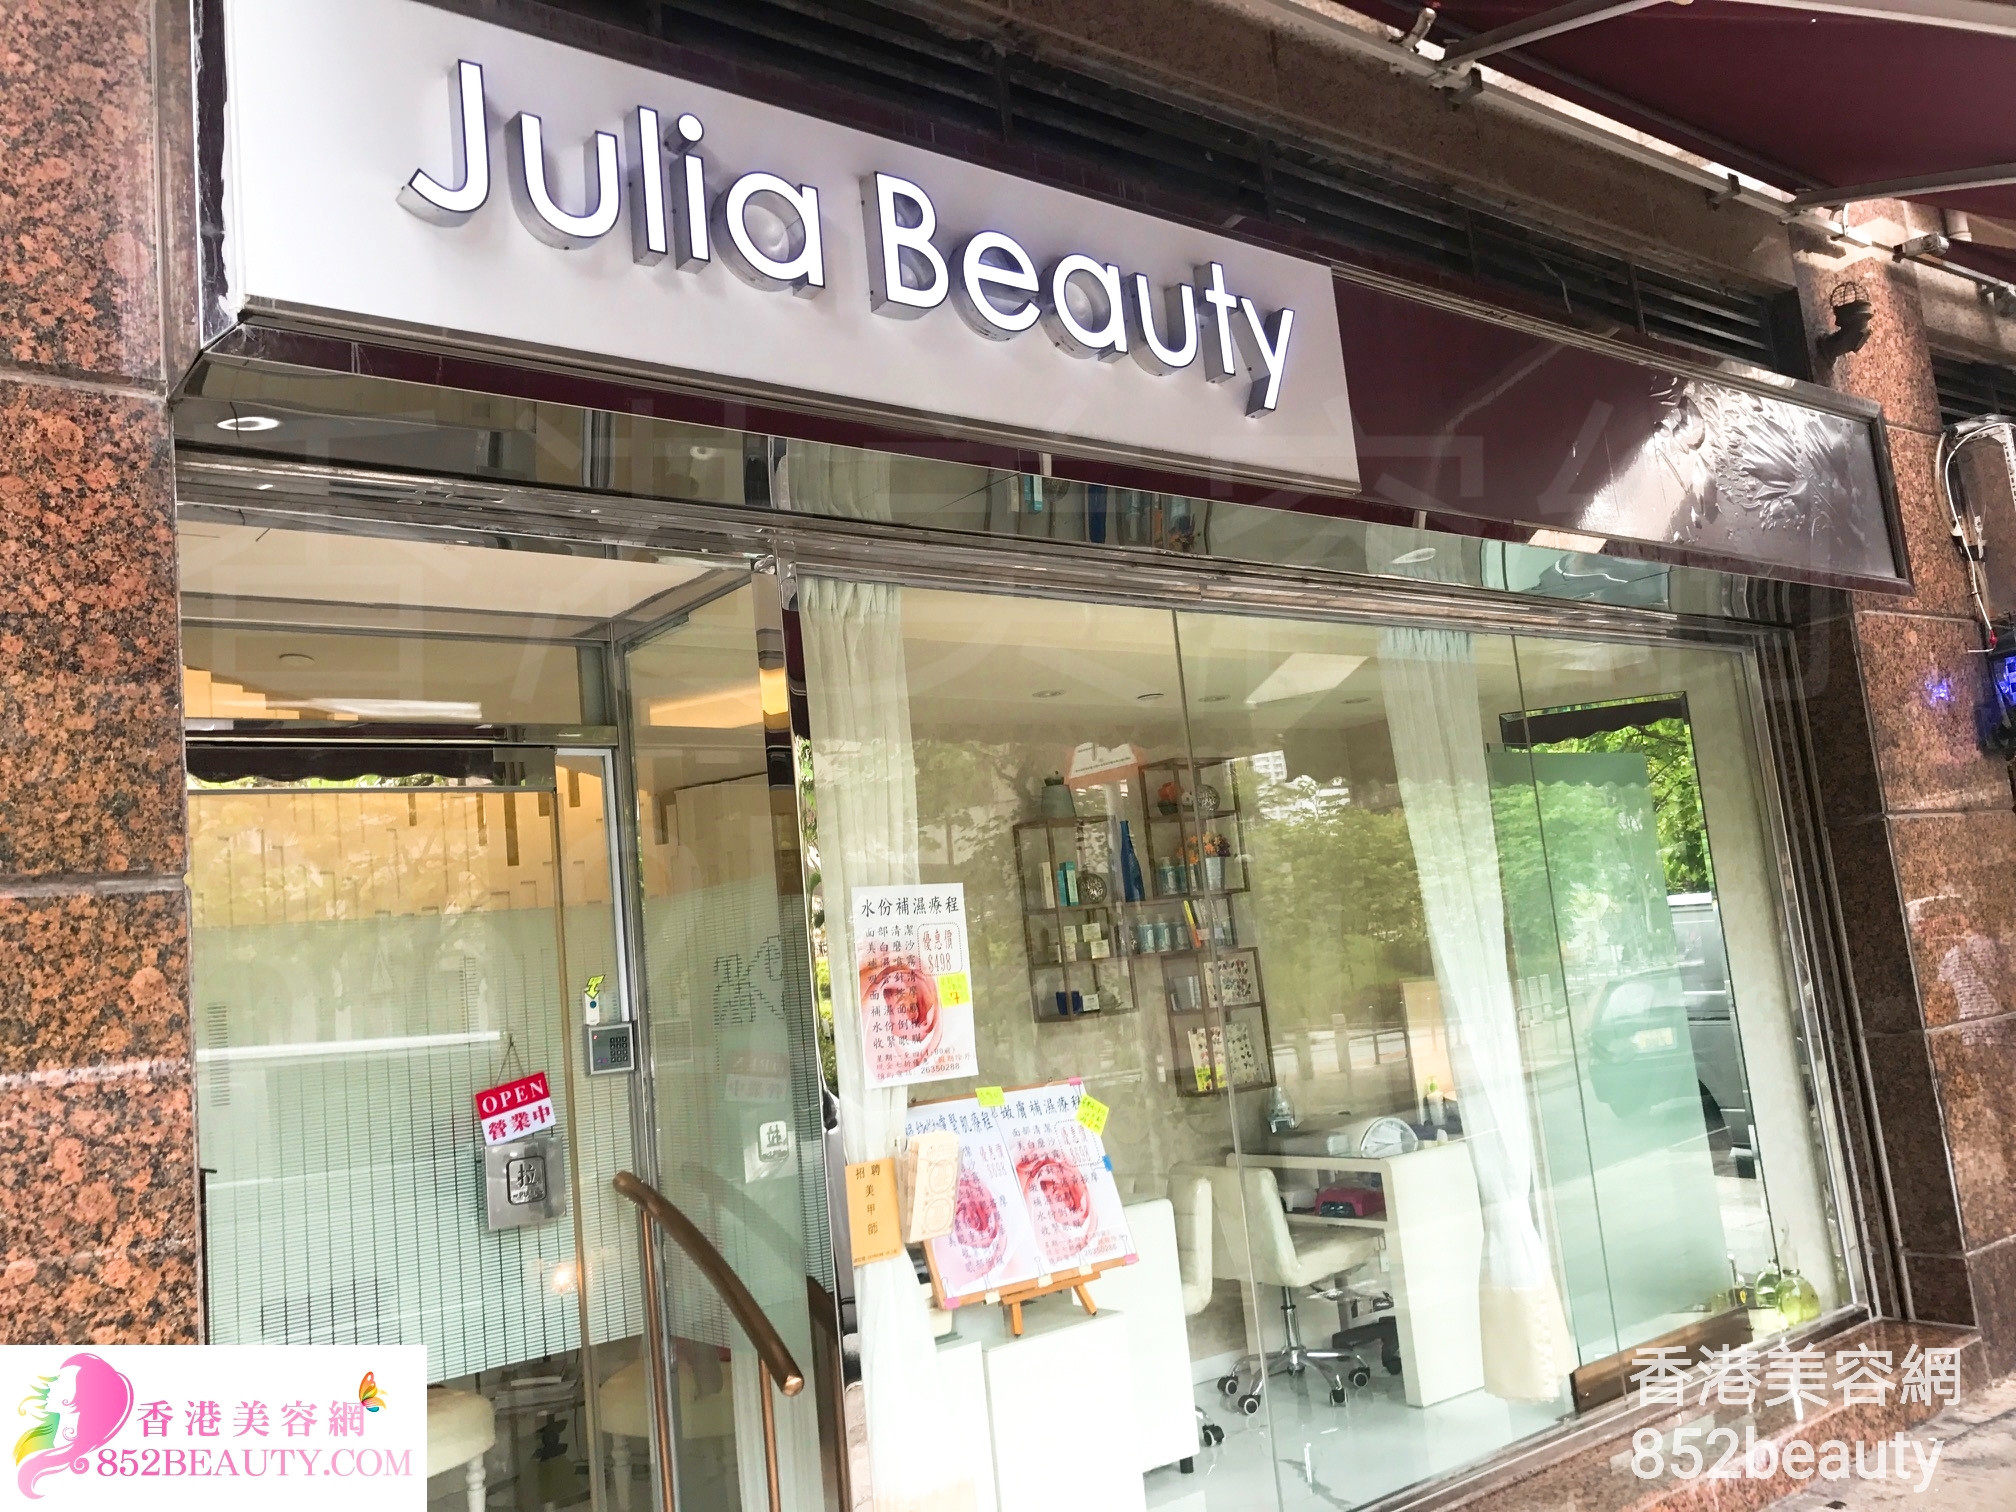 面部護理: Julia Beauty